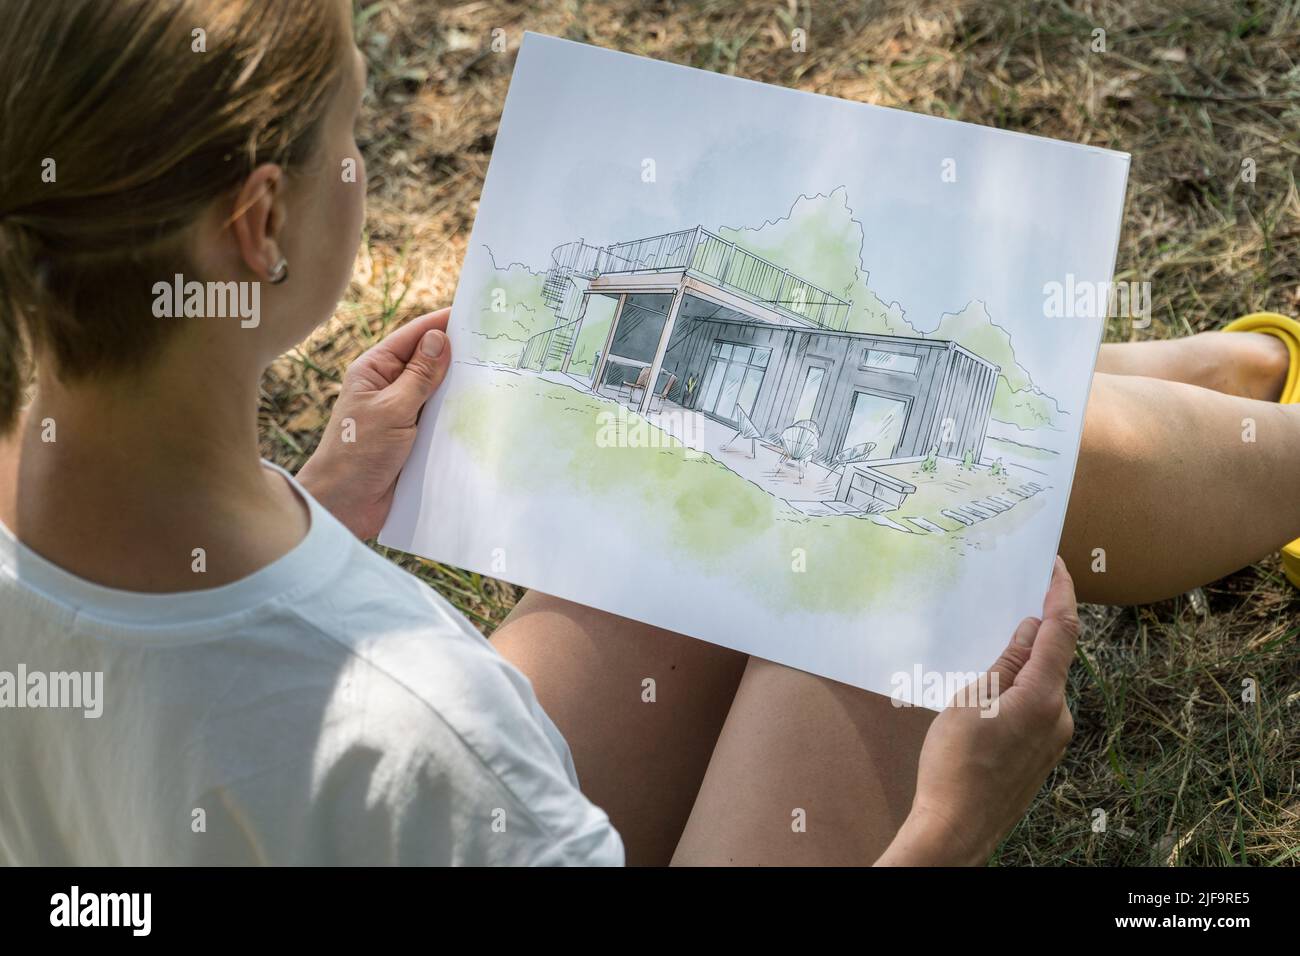 Zeitgenössisches Hausdesign Handgezeichnete Skizze in den Händen von Architekt. Architektonisches Designkonzept Stockfoto